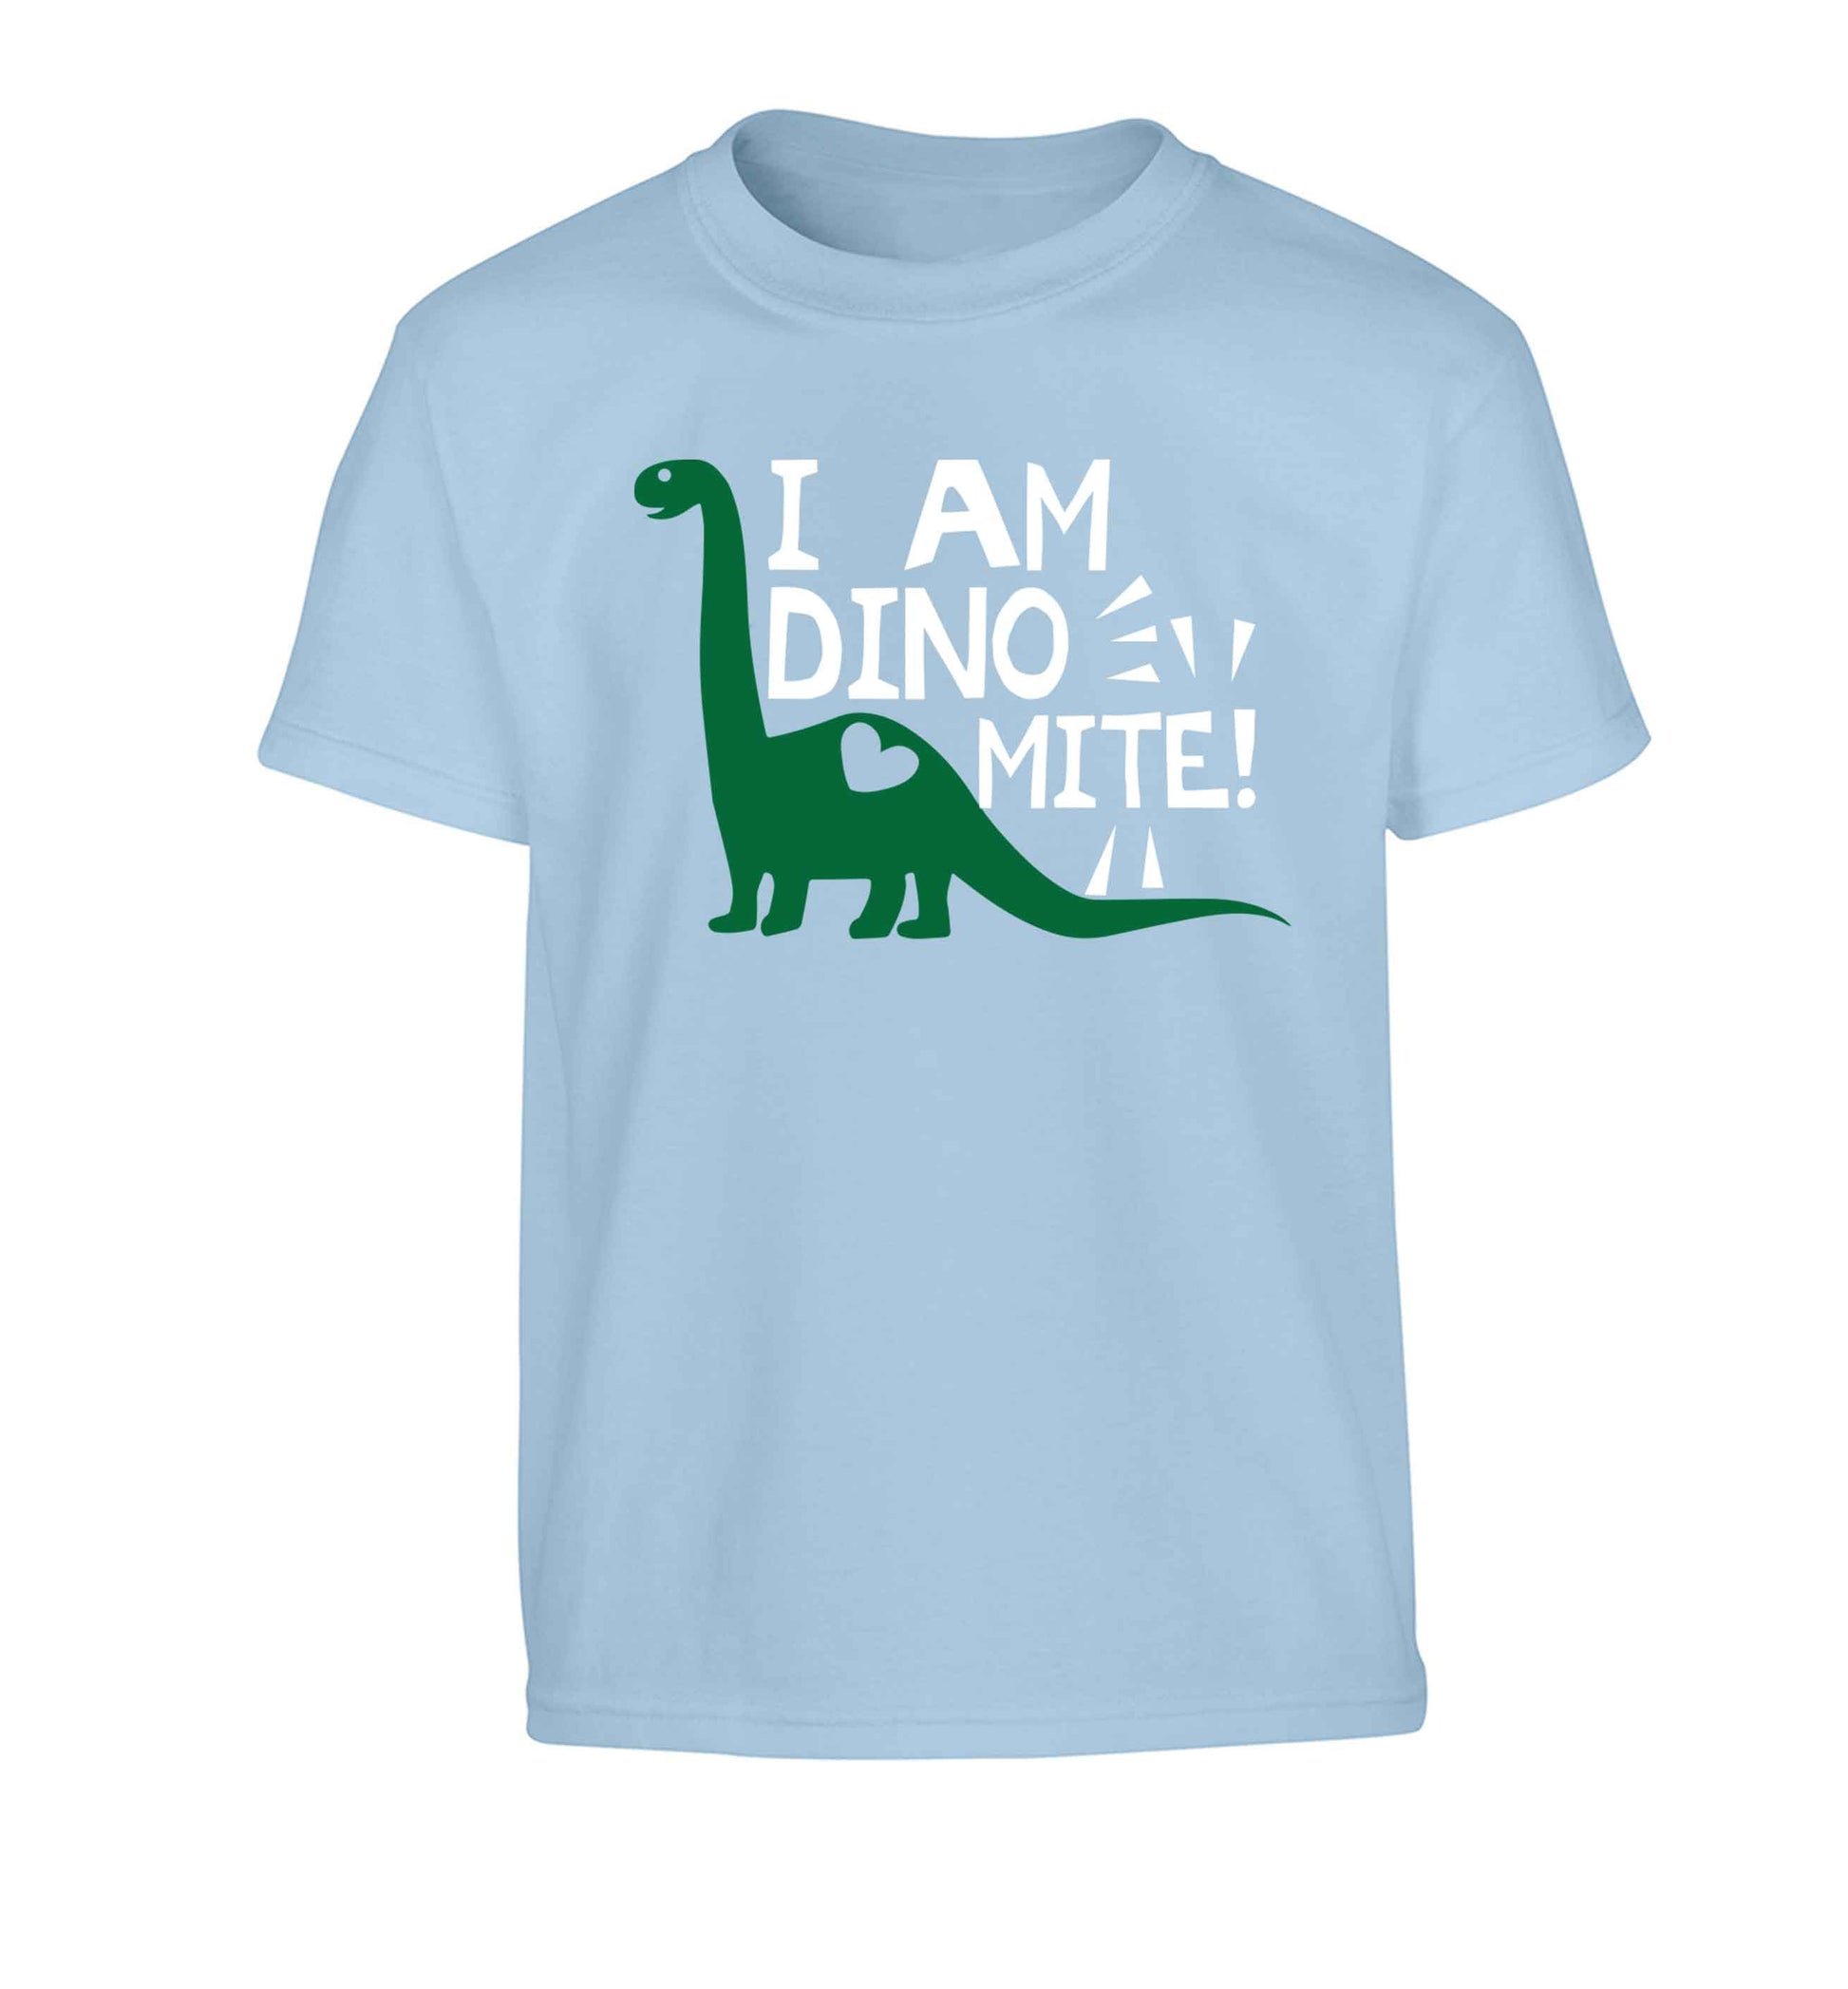 I am dinomite! Children's light blue Tshirt 12-13 Years